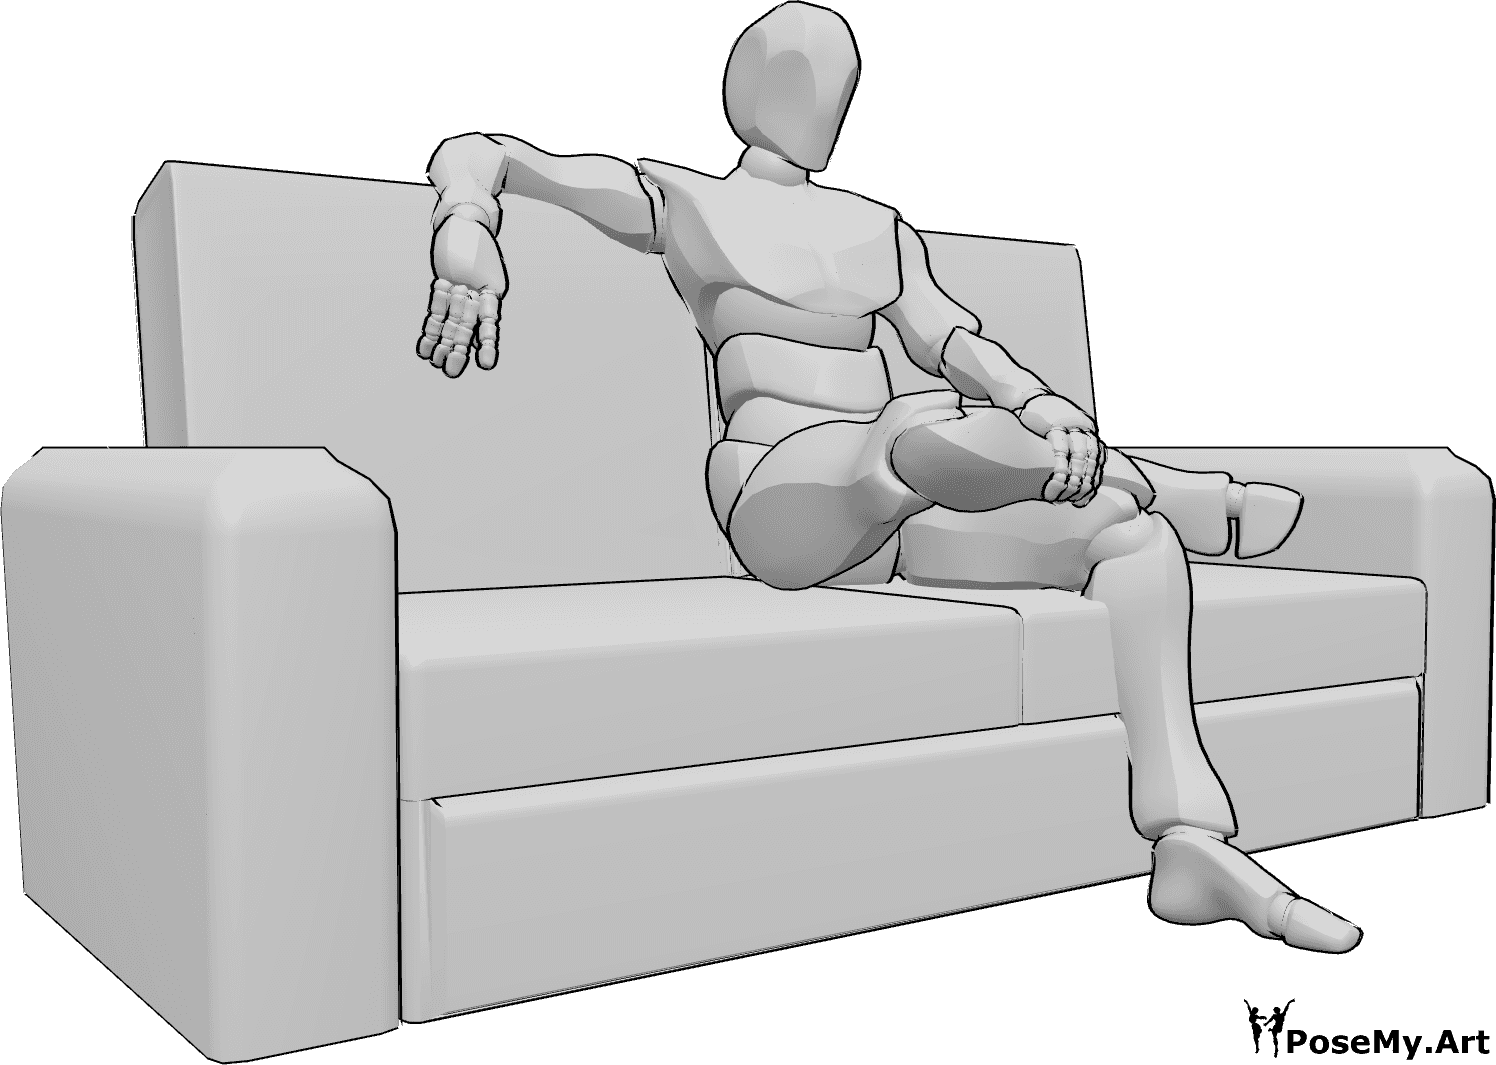 Posen-Referenz- Sitzende Pose mit gekreuzten Beinen - Mann sitzt mit gekreuzten Beinen auf der Couch, hält sein Bein mit der linken Hand und stützt sich mit der rechten Hand auf dem Sofa ab